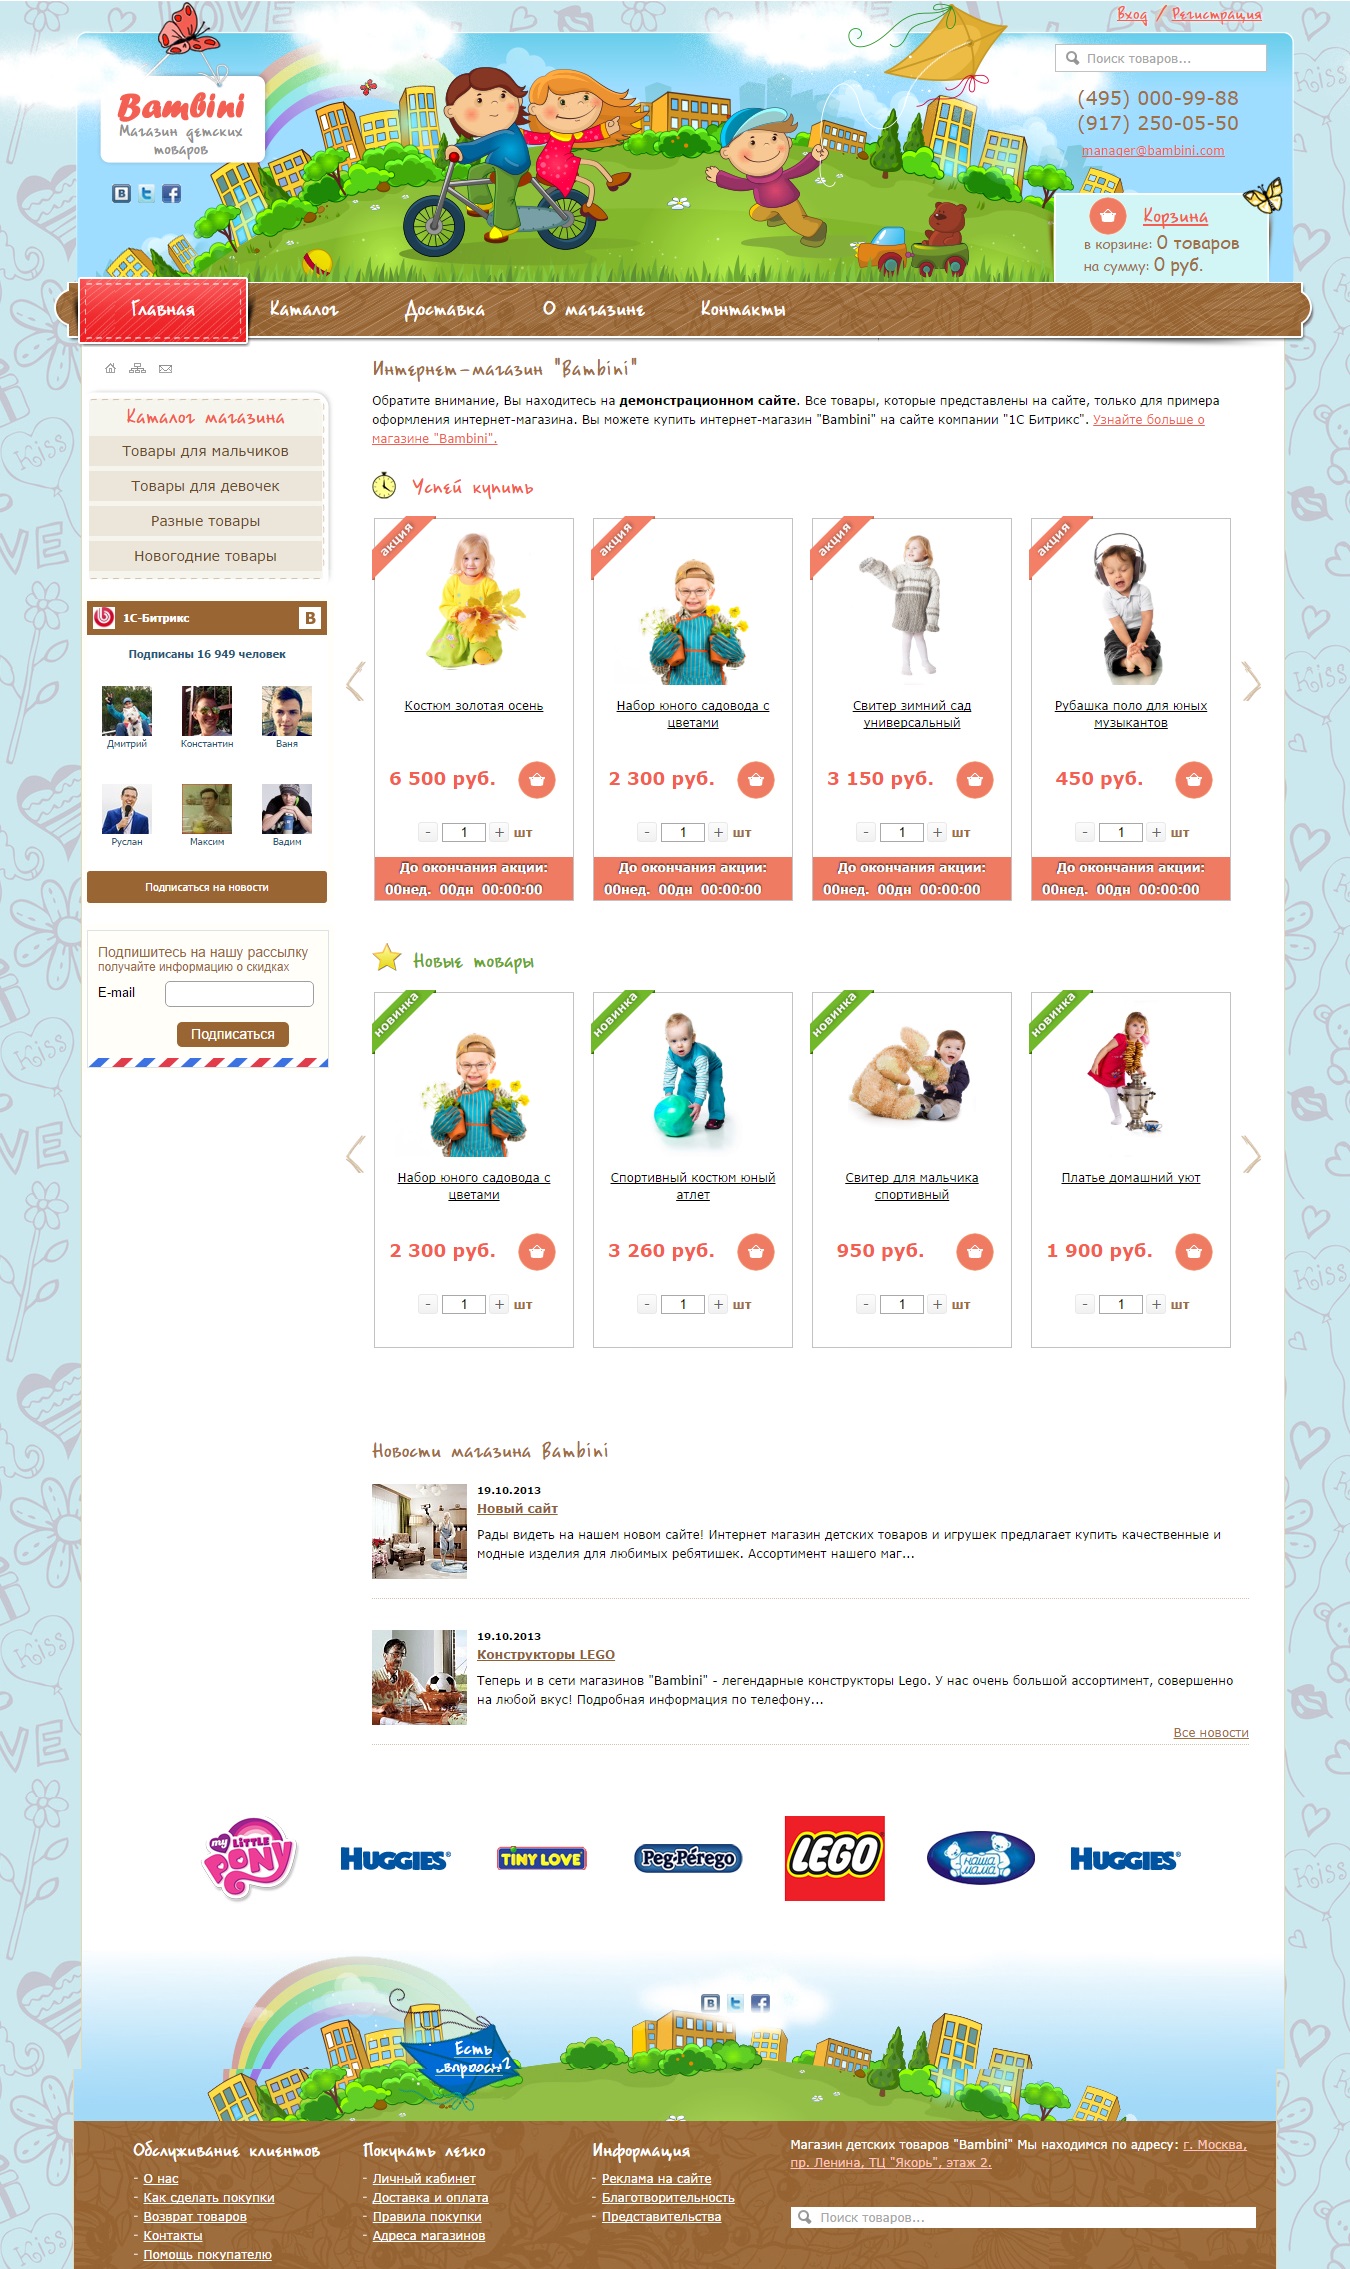 Готовый интернет-магазин детских товаров - 51900 руб.